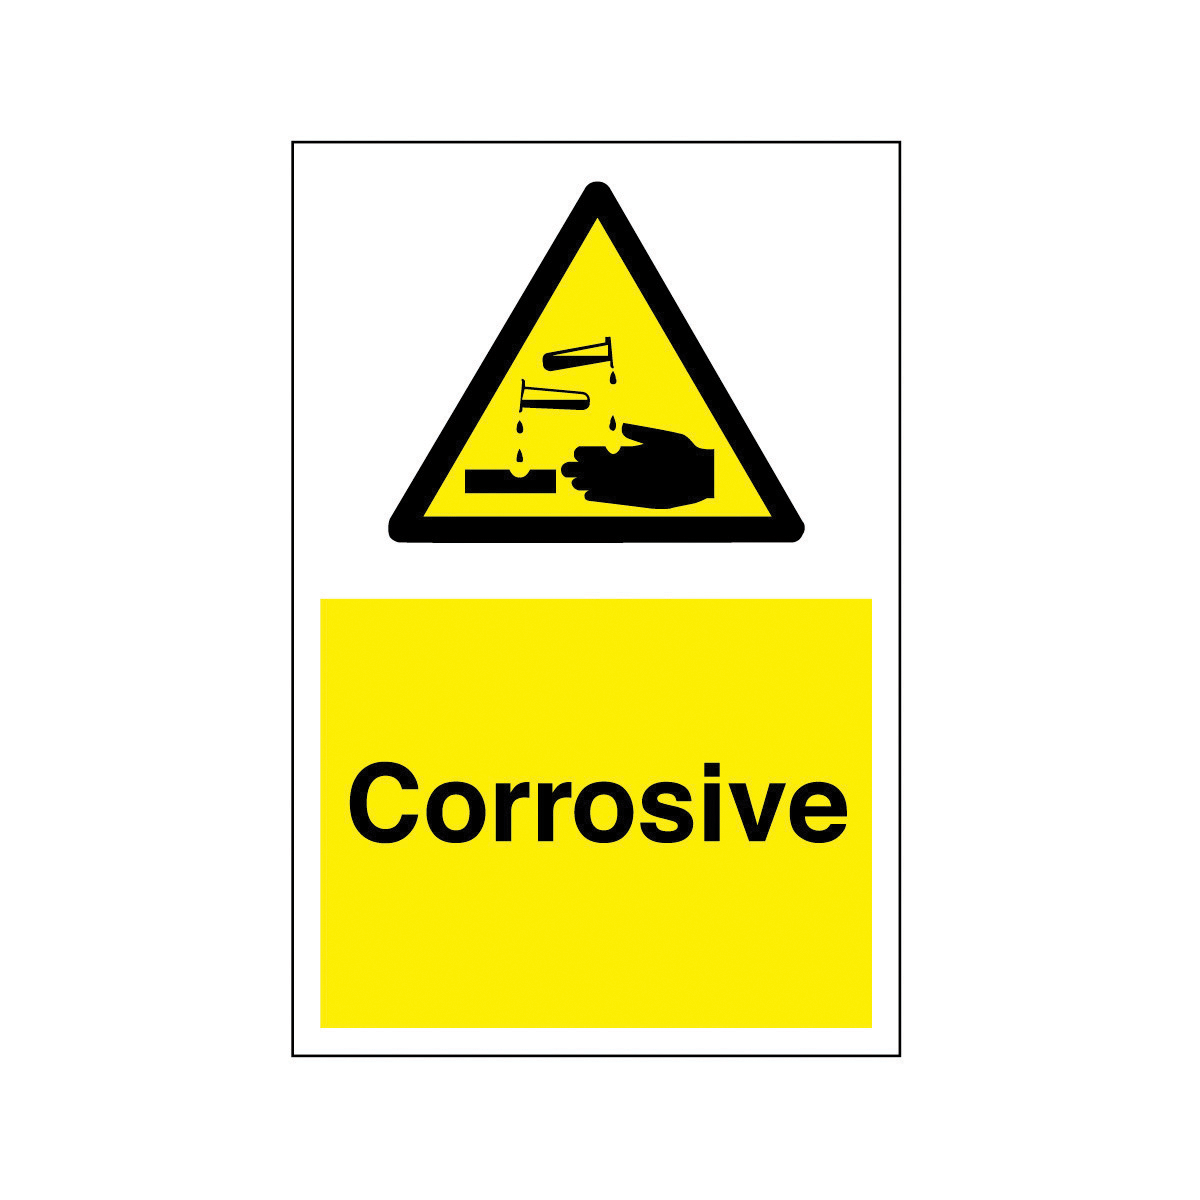 Corrosive Safety Sign - Hazard & Warning Sign from BiGDUG UK ...